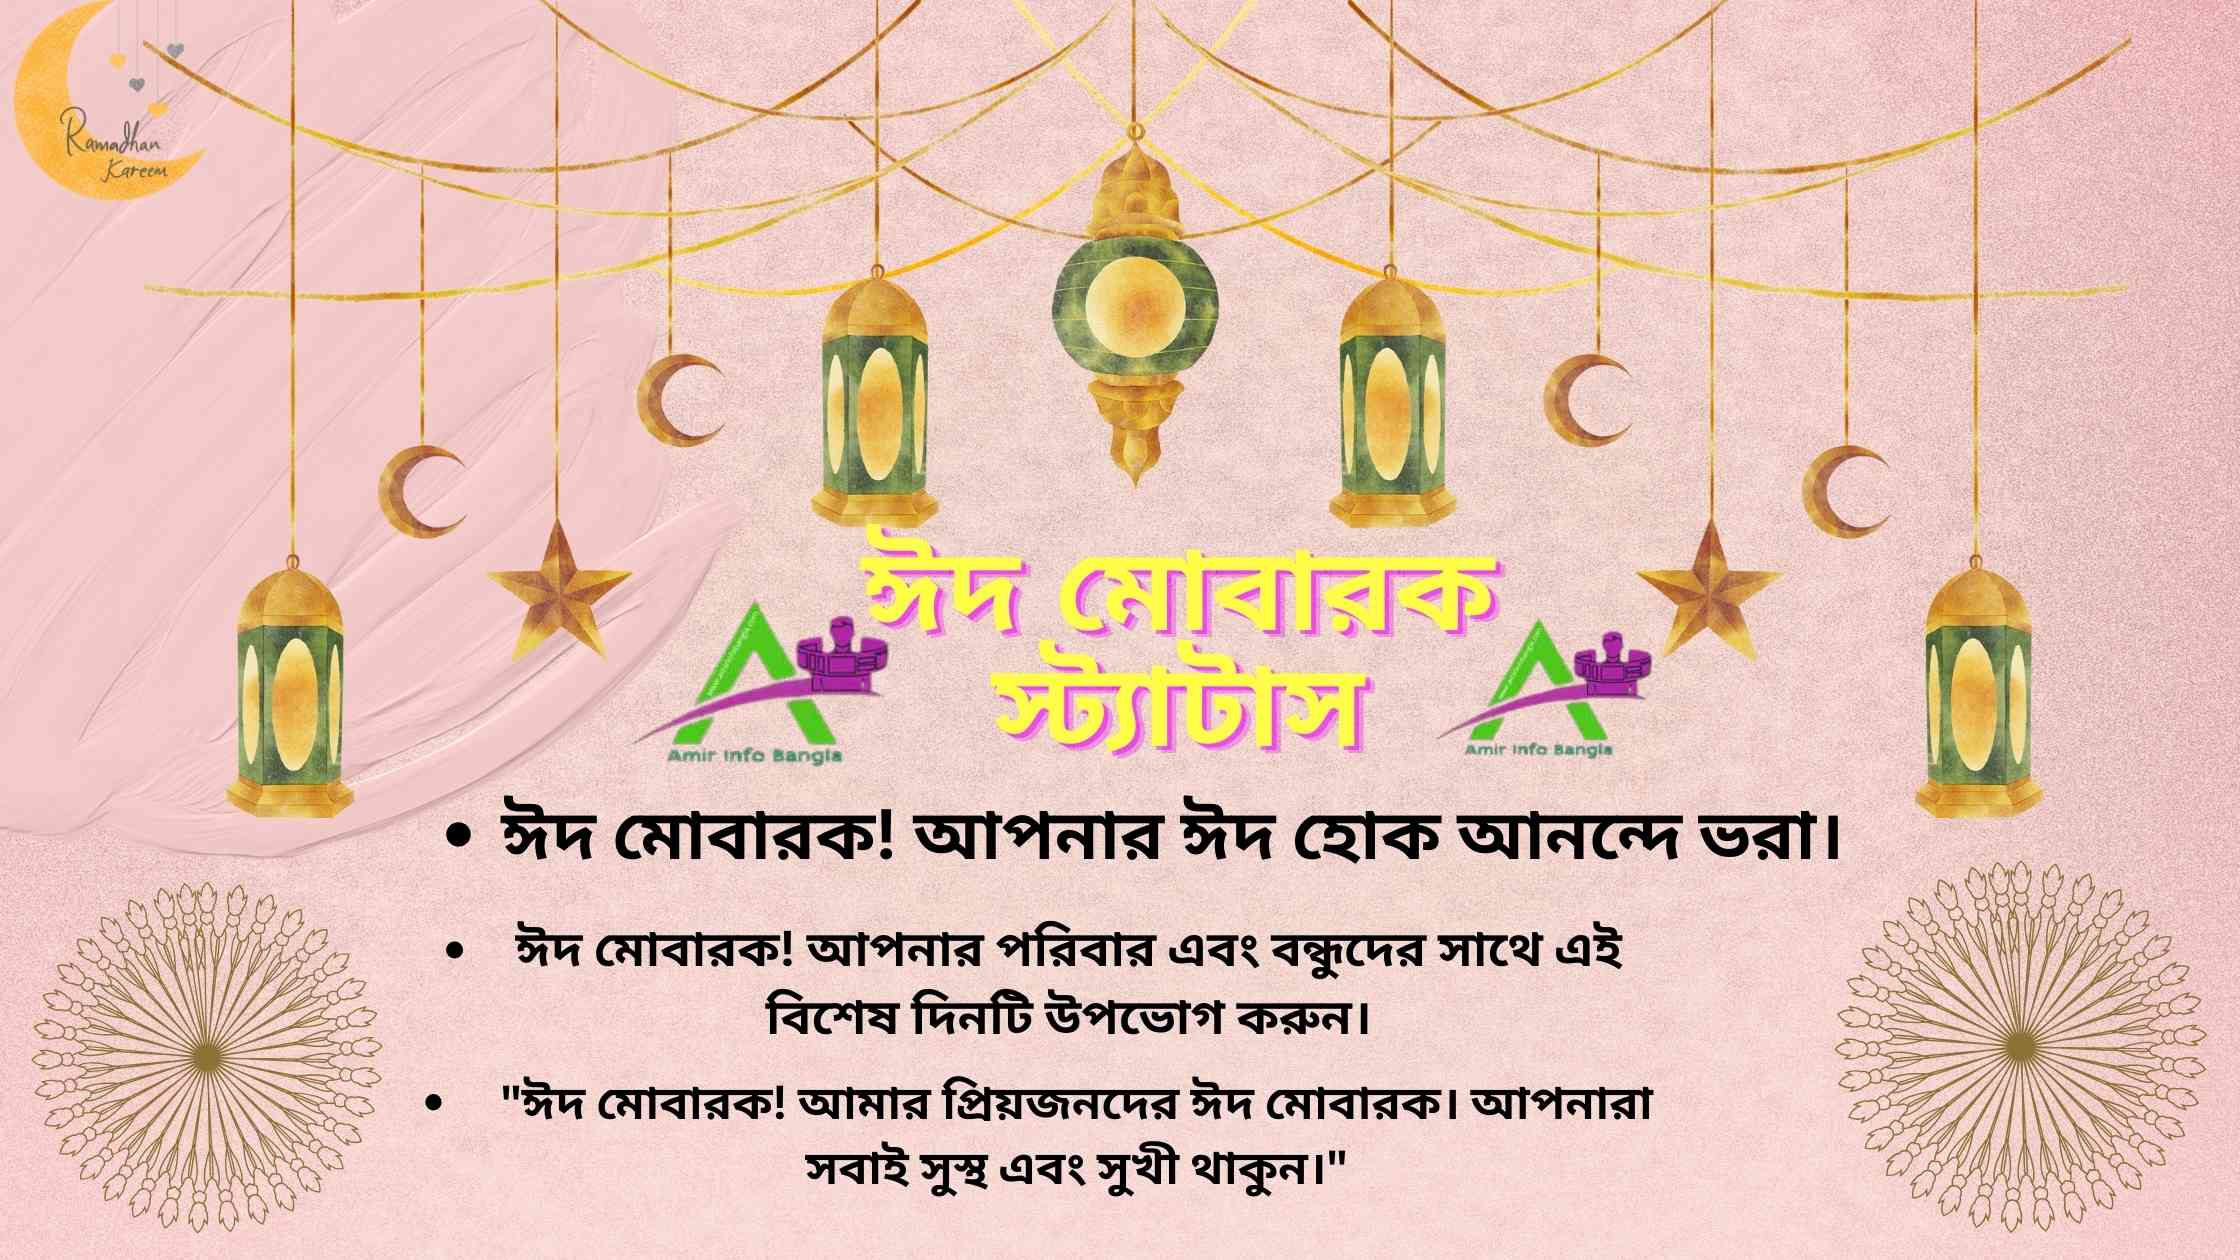 ঈদ মোবারক স্ট্যাটাস | Eid Mubarak status in Bangla